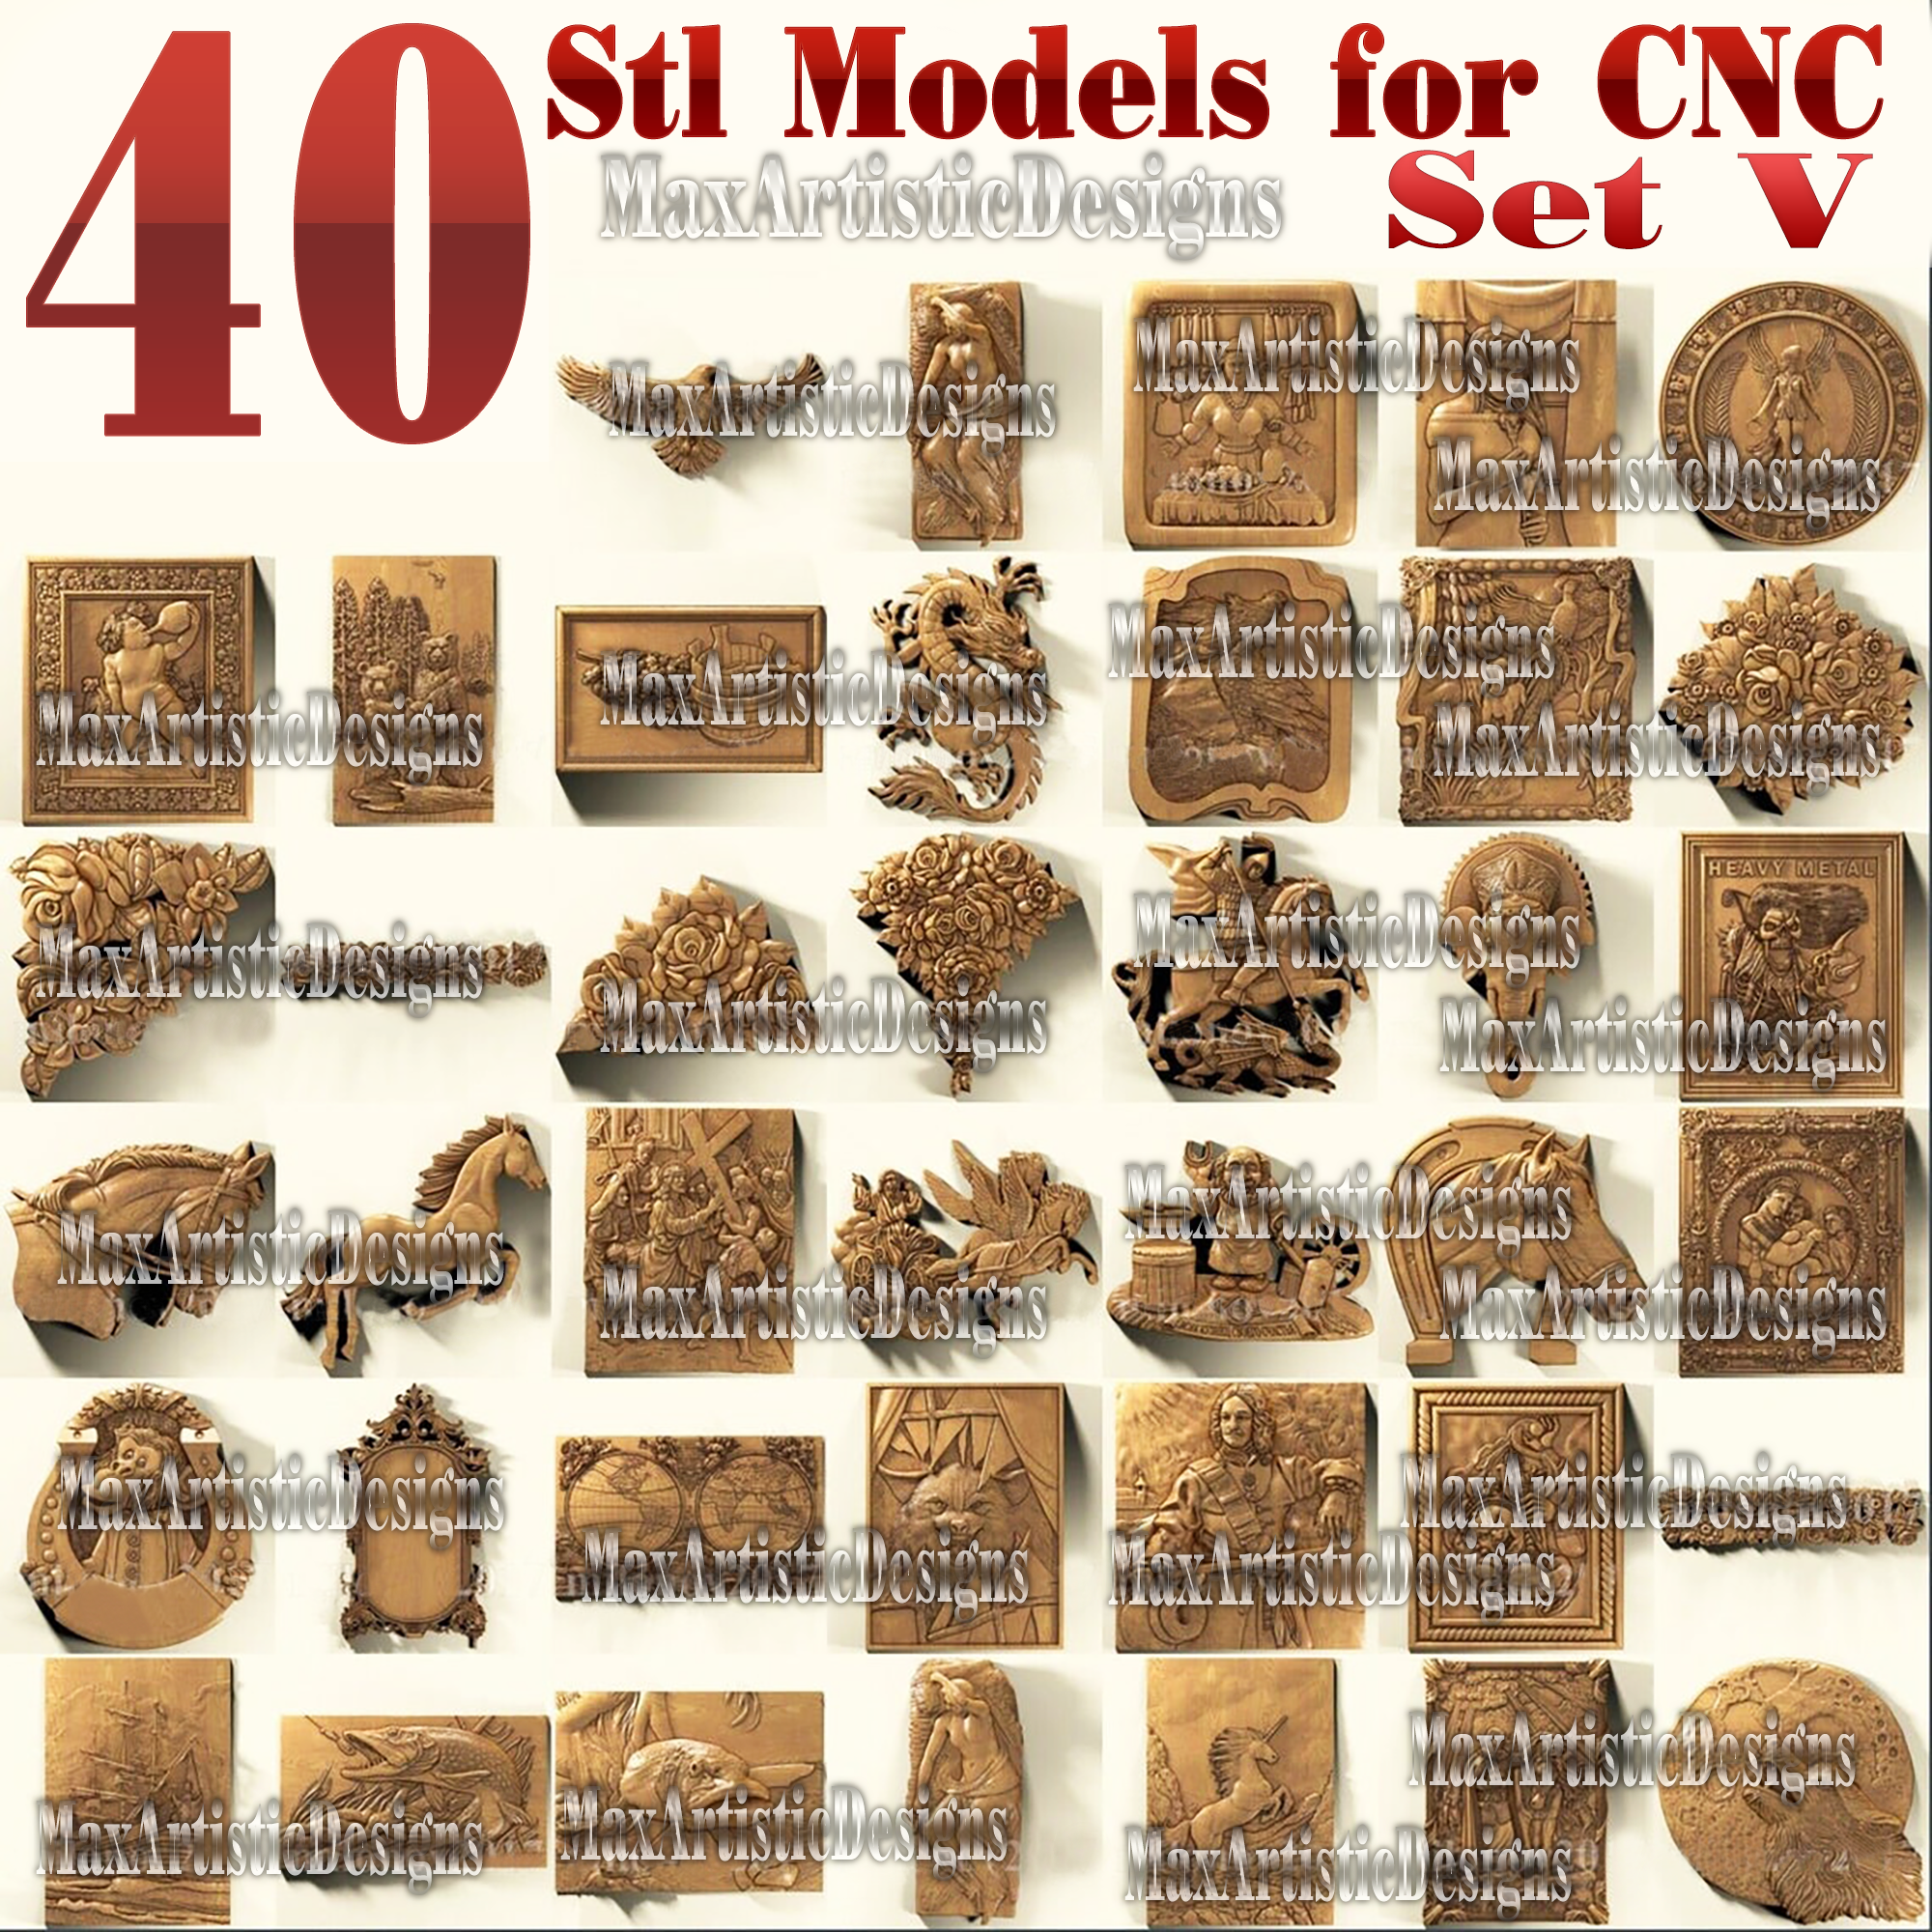 41 Stk. 3D-Stl-Modelle Basrelief-Metallarbeiten für CNC-Fräser Artcam Aspire Set V Download